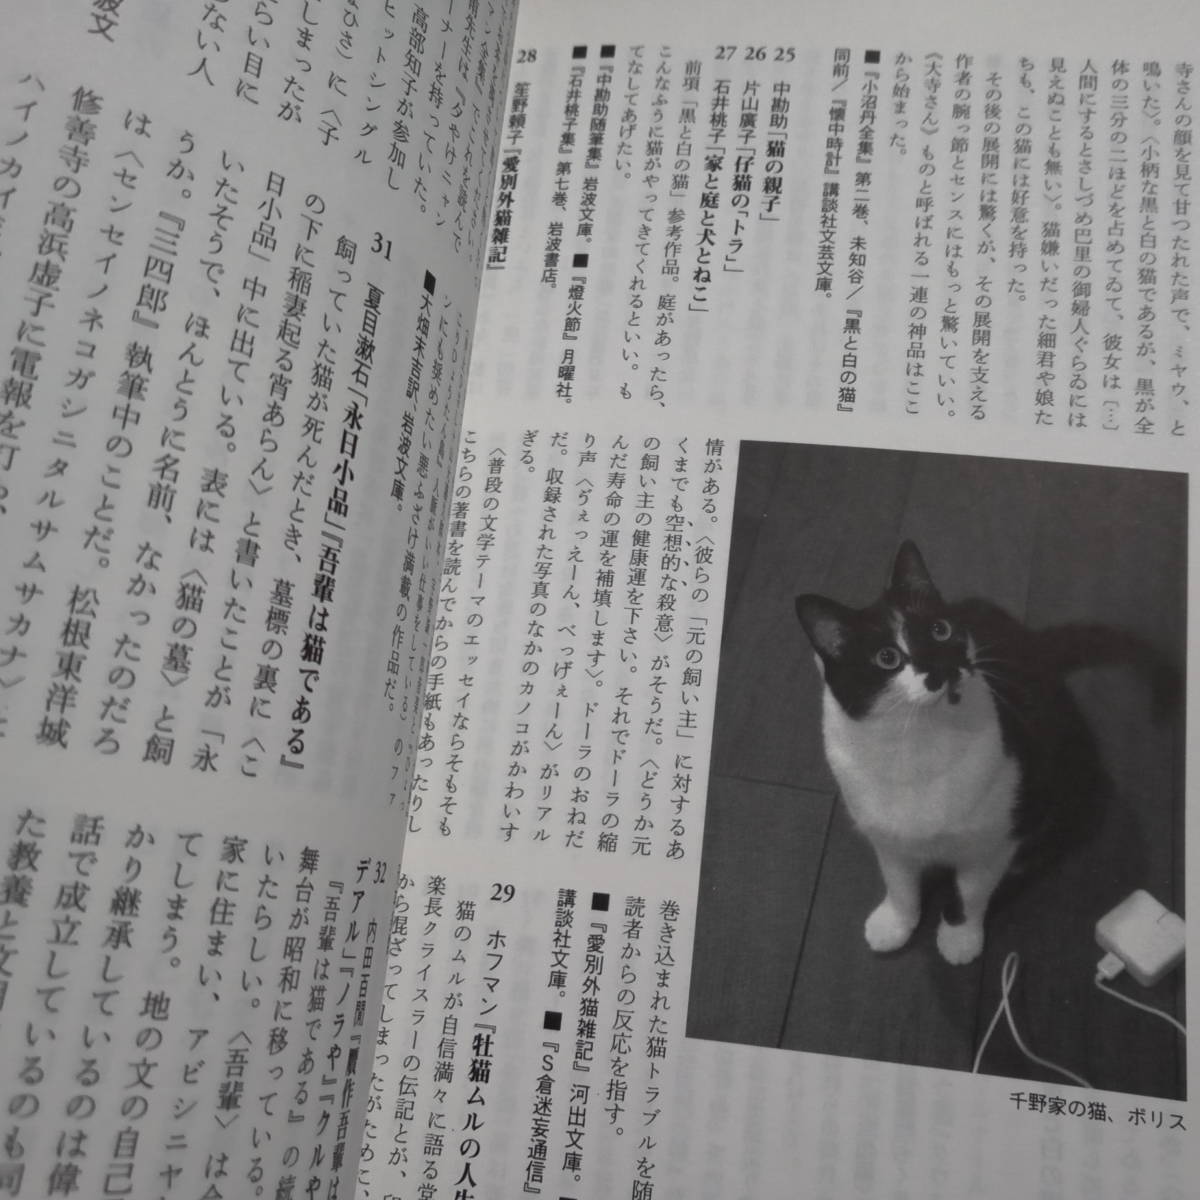  лилия кальмар 2010 год 11 месяц номер специальный выпуск кошка угол рисовое поле свет плата запад ... тысяч . шляпа Yoshida ami храм .... три ... золотой рисовое поле ..